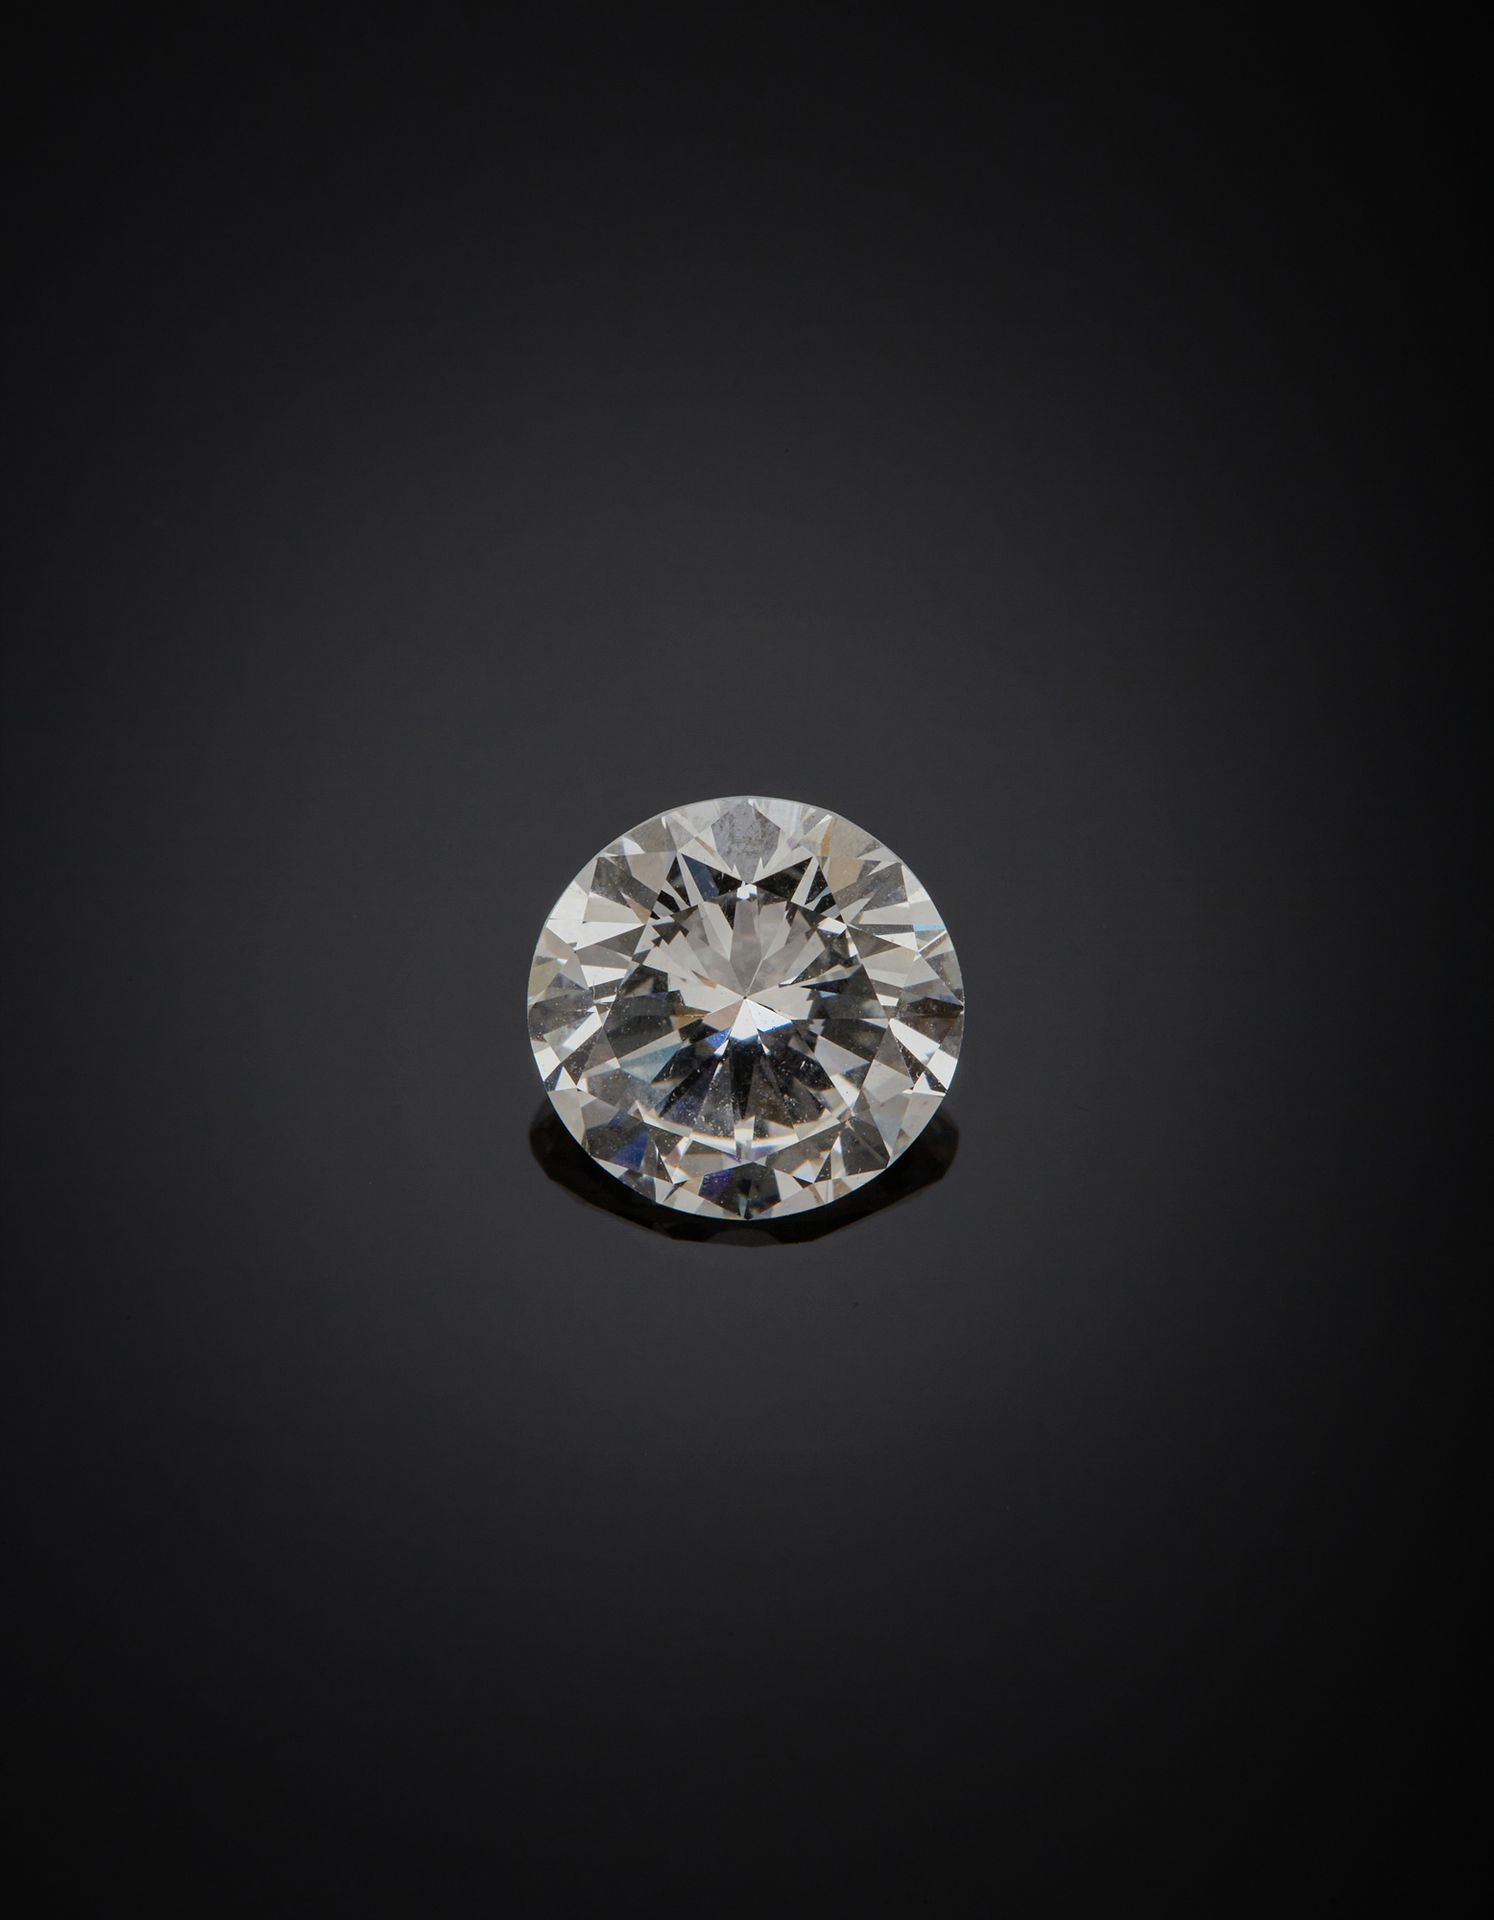 Null Diamant de taille brillant pesant 2,18 carats.

Pré-certificat du Laboratoi&hellip;